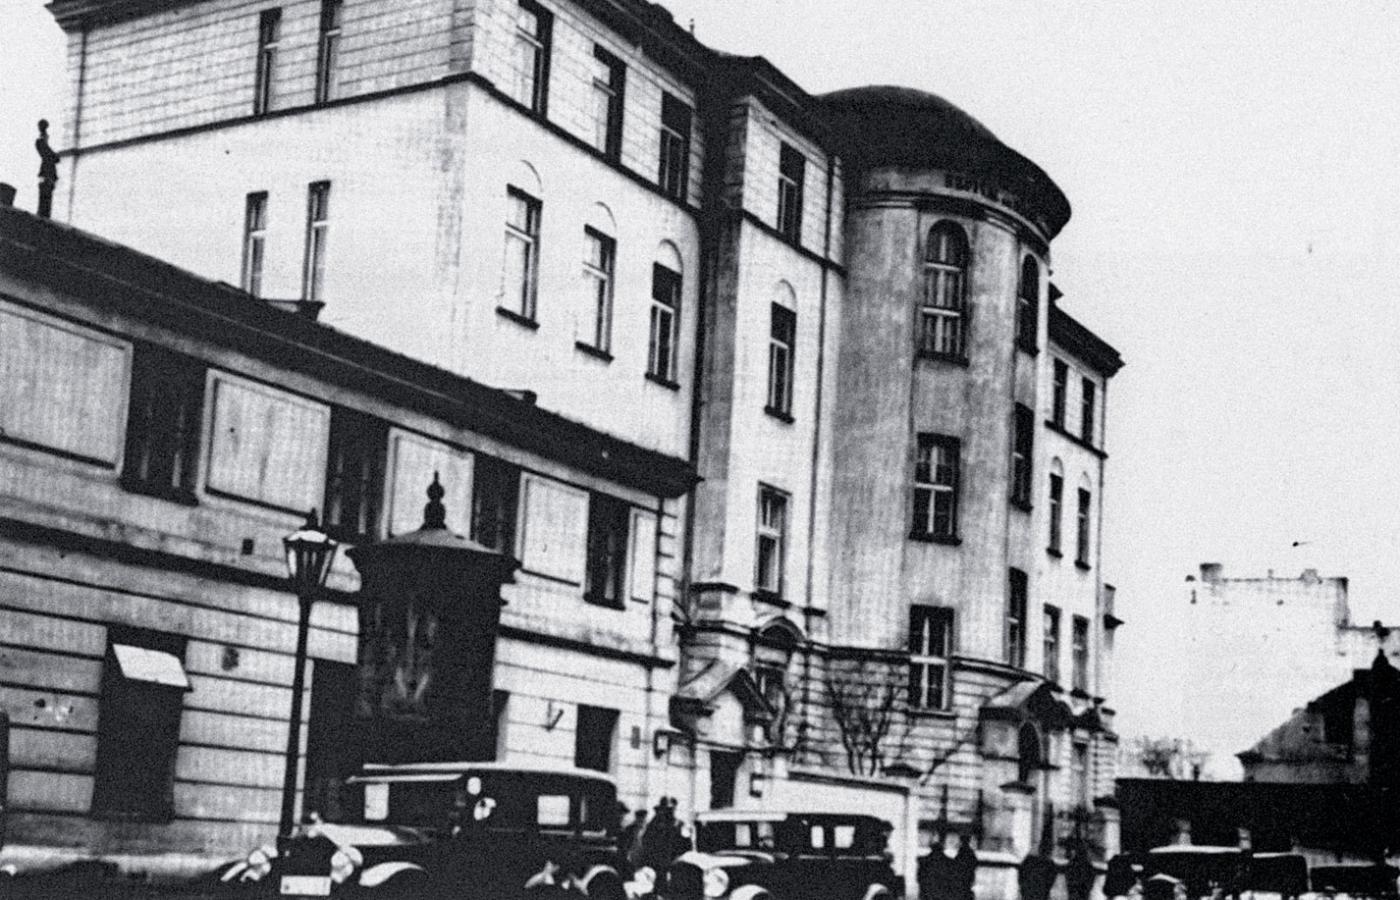 Szpital dziecięcy Bersohnów i Baumanów przy ul. Śliskiej, lata 30. Pracowało tu wielu wspaniałych żydowskich lekarzy (w tym Janusz Korczak), również w czasie drugiej wojny. Budynek jako jeden z nielicznych z terenu getta zachował się do dziś.